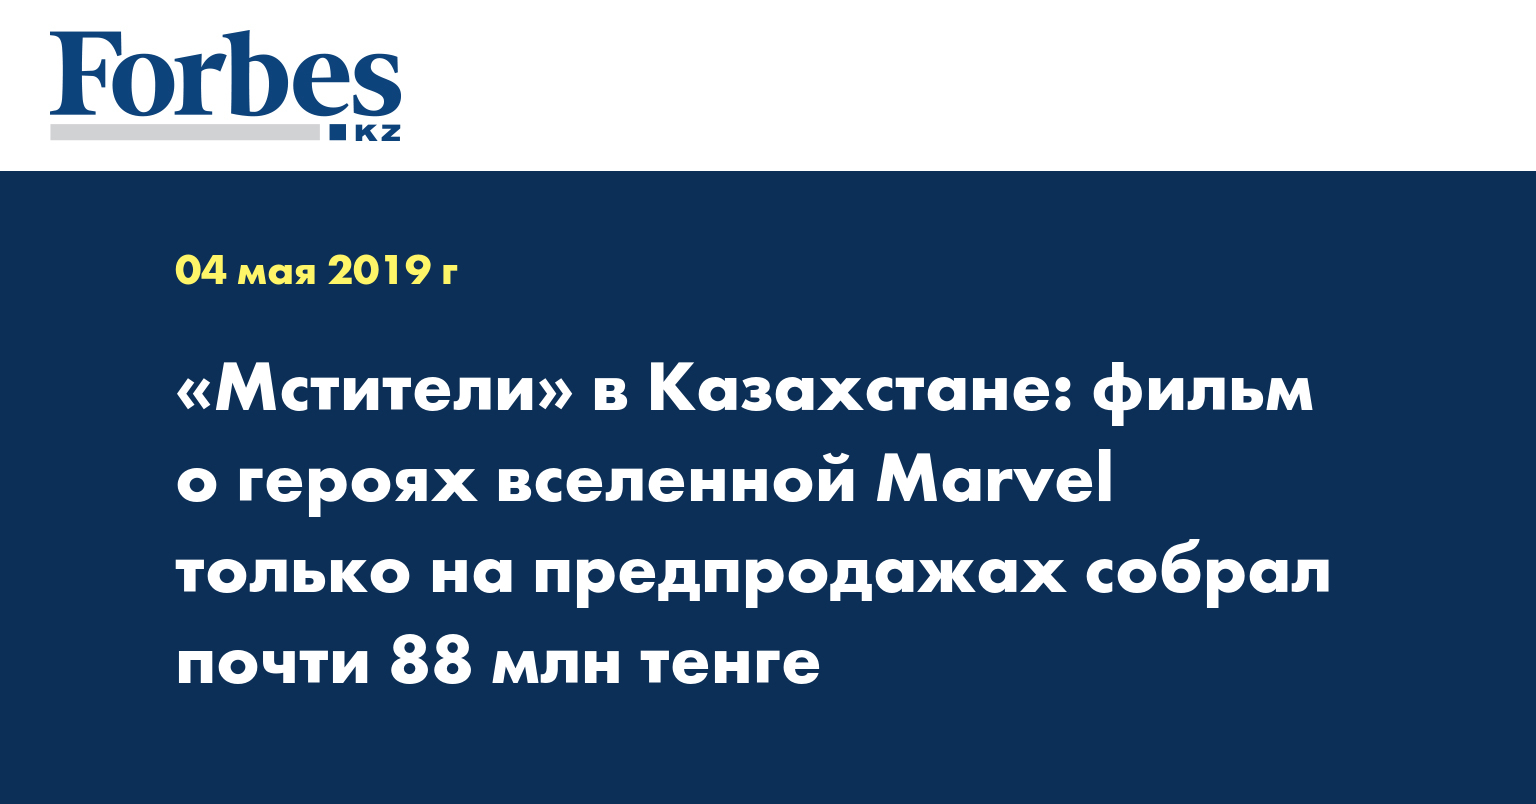 «Мстители» в Kазахстане: фильм о героях вселенной Marvel только на предпродажах собрал почти 88 млн тенге